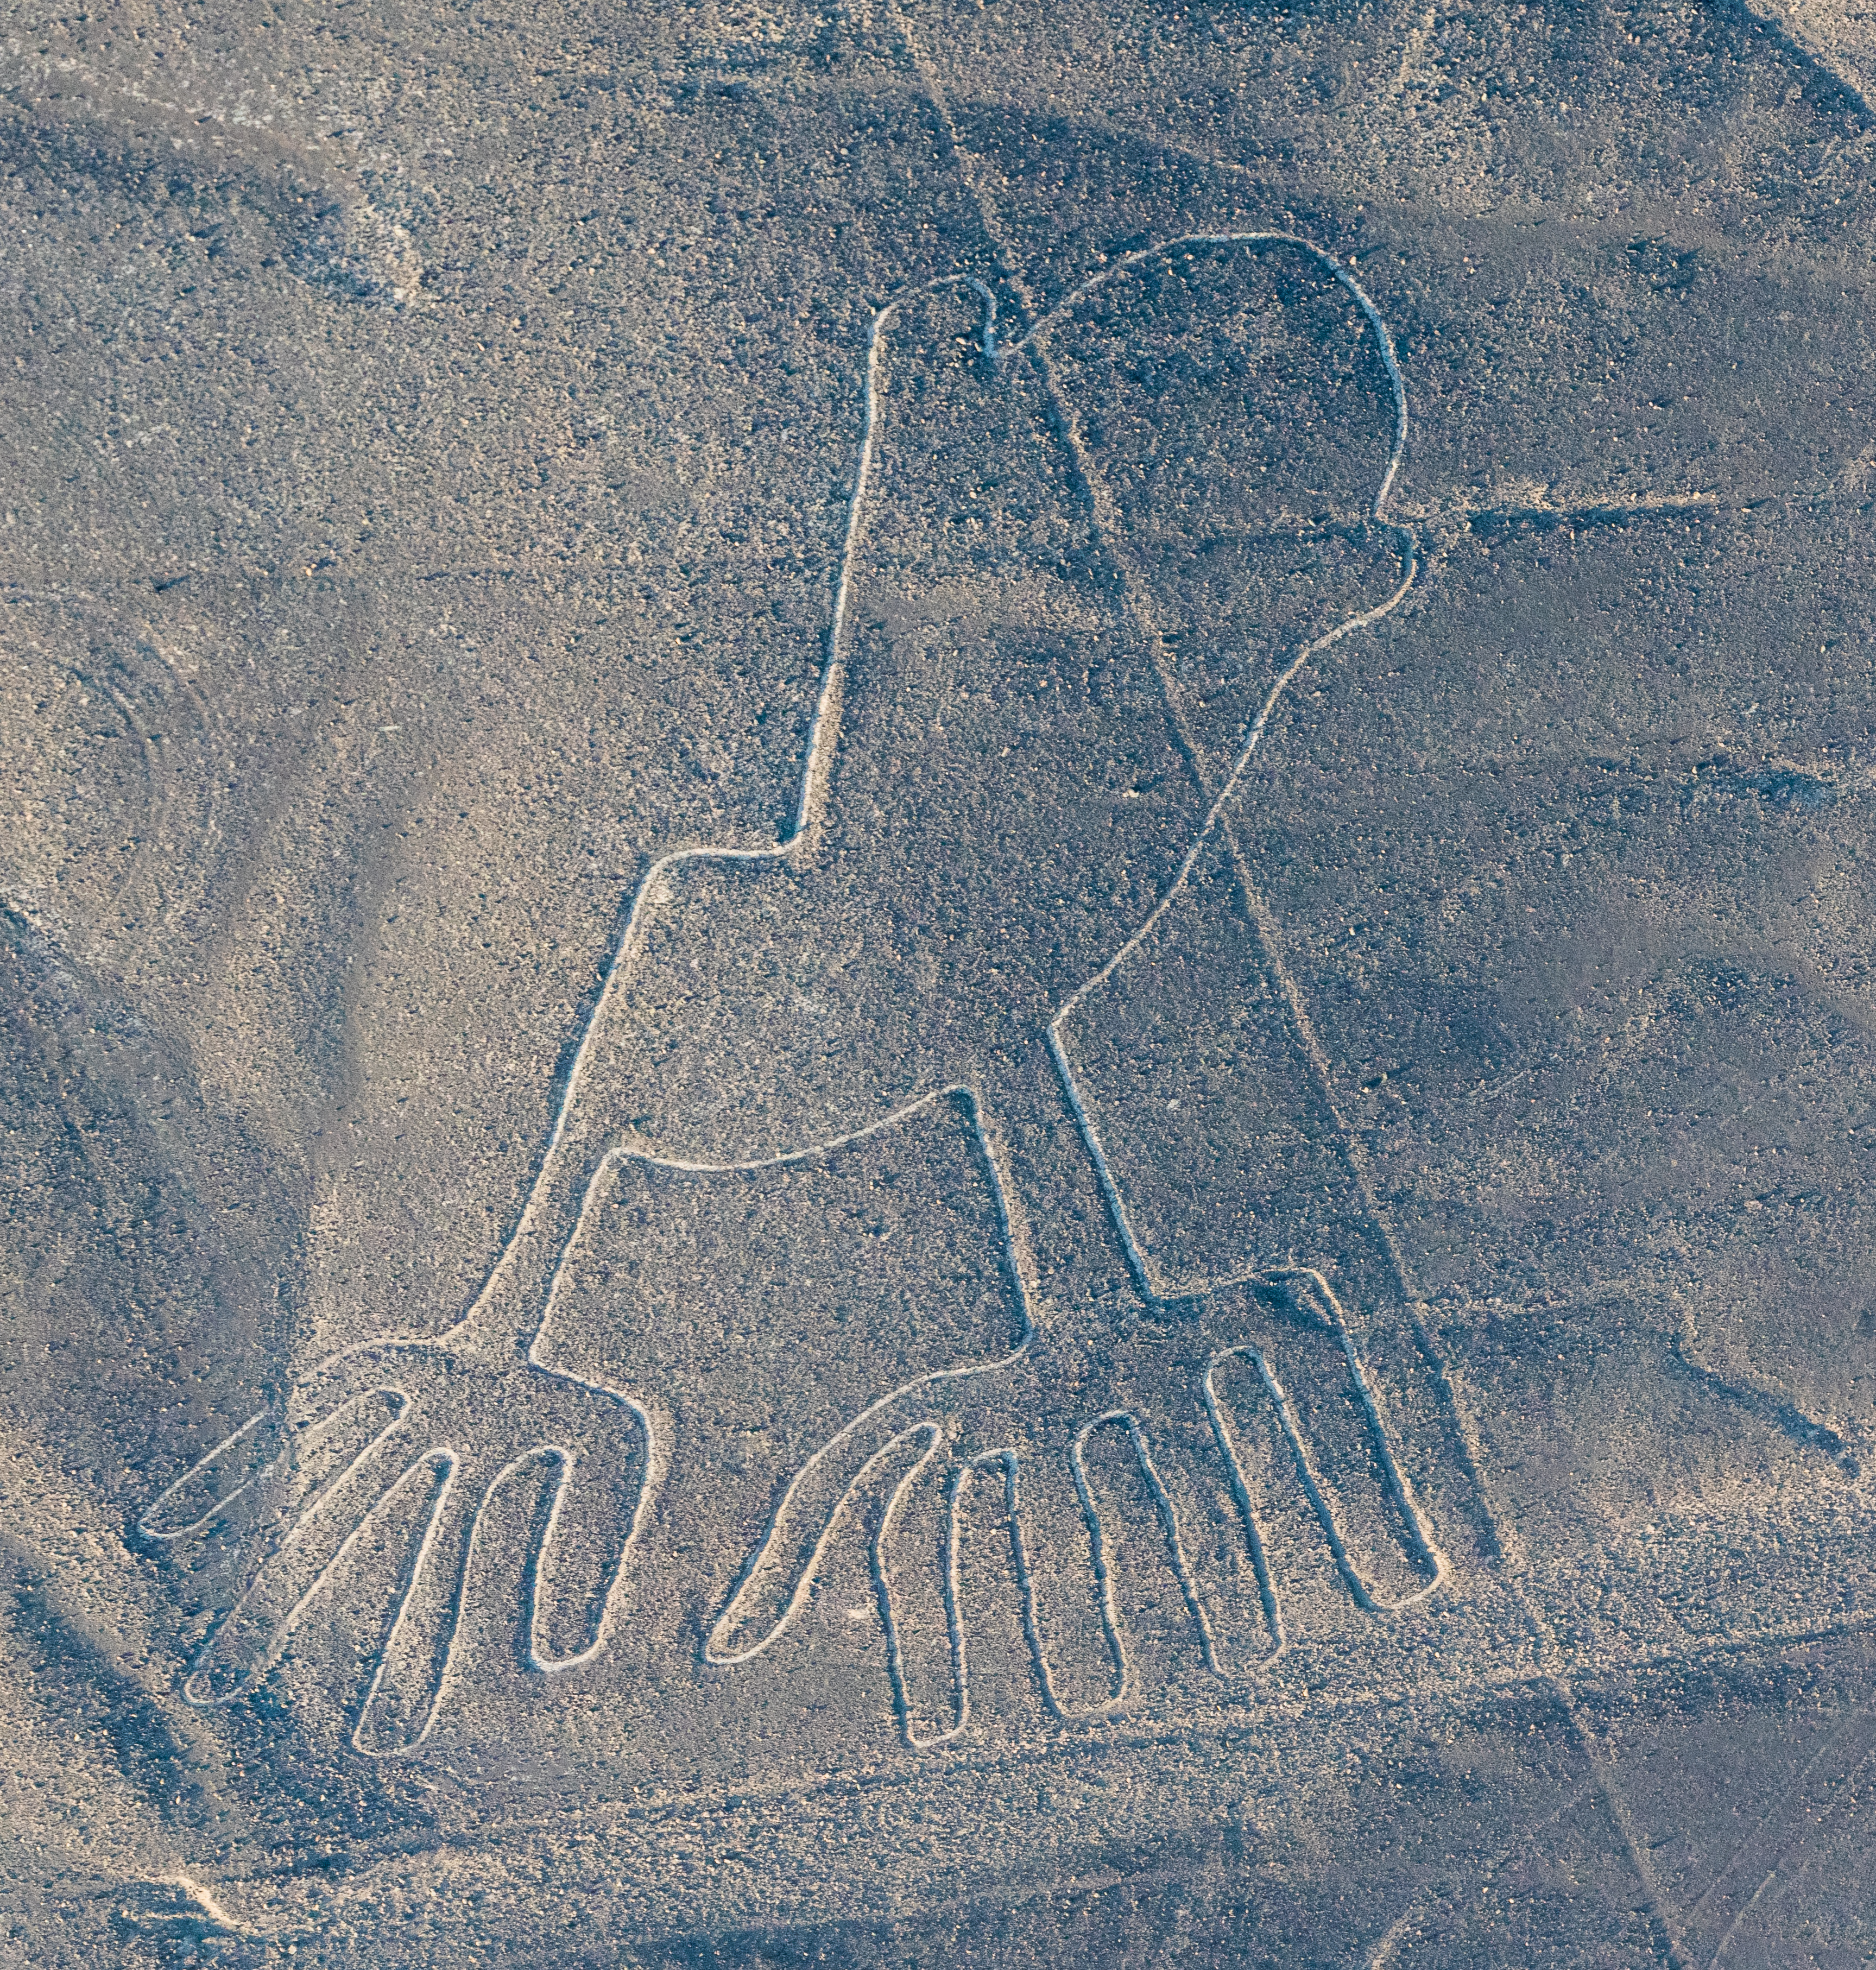 Líneas de Nazca, Nazca, Perú, 2015-07-29, DD 62.JPG